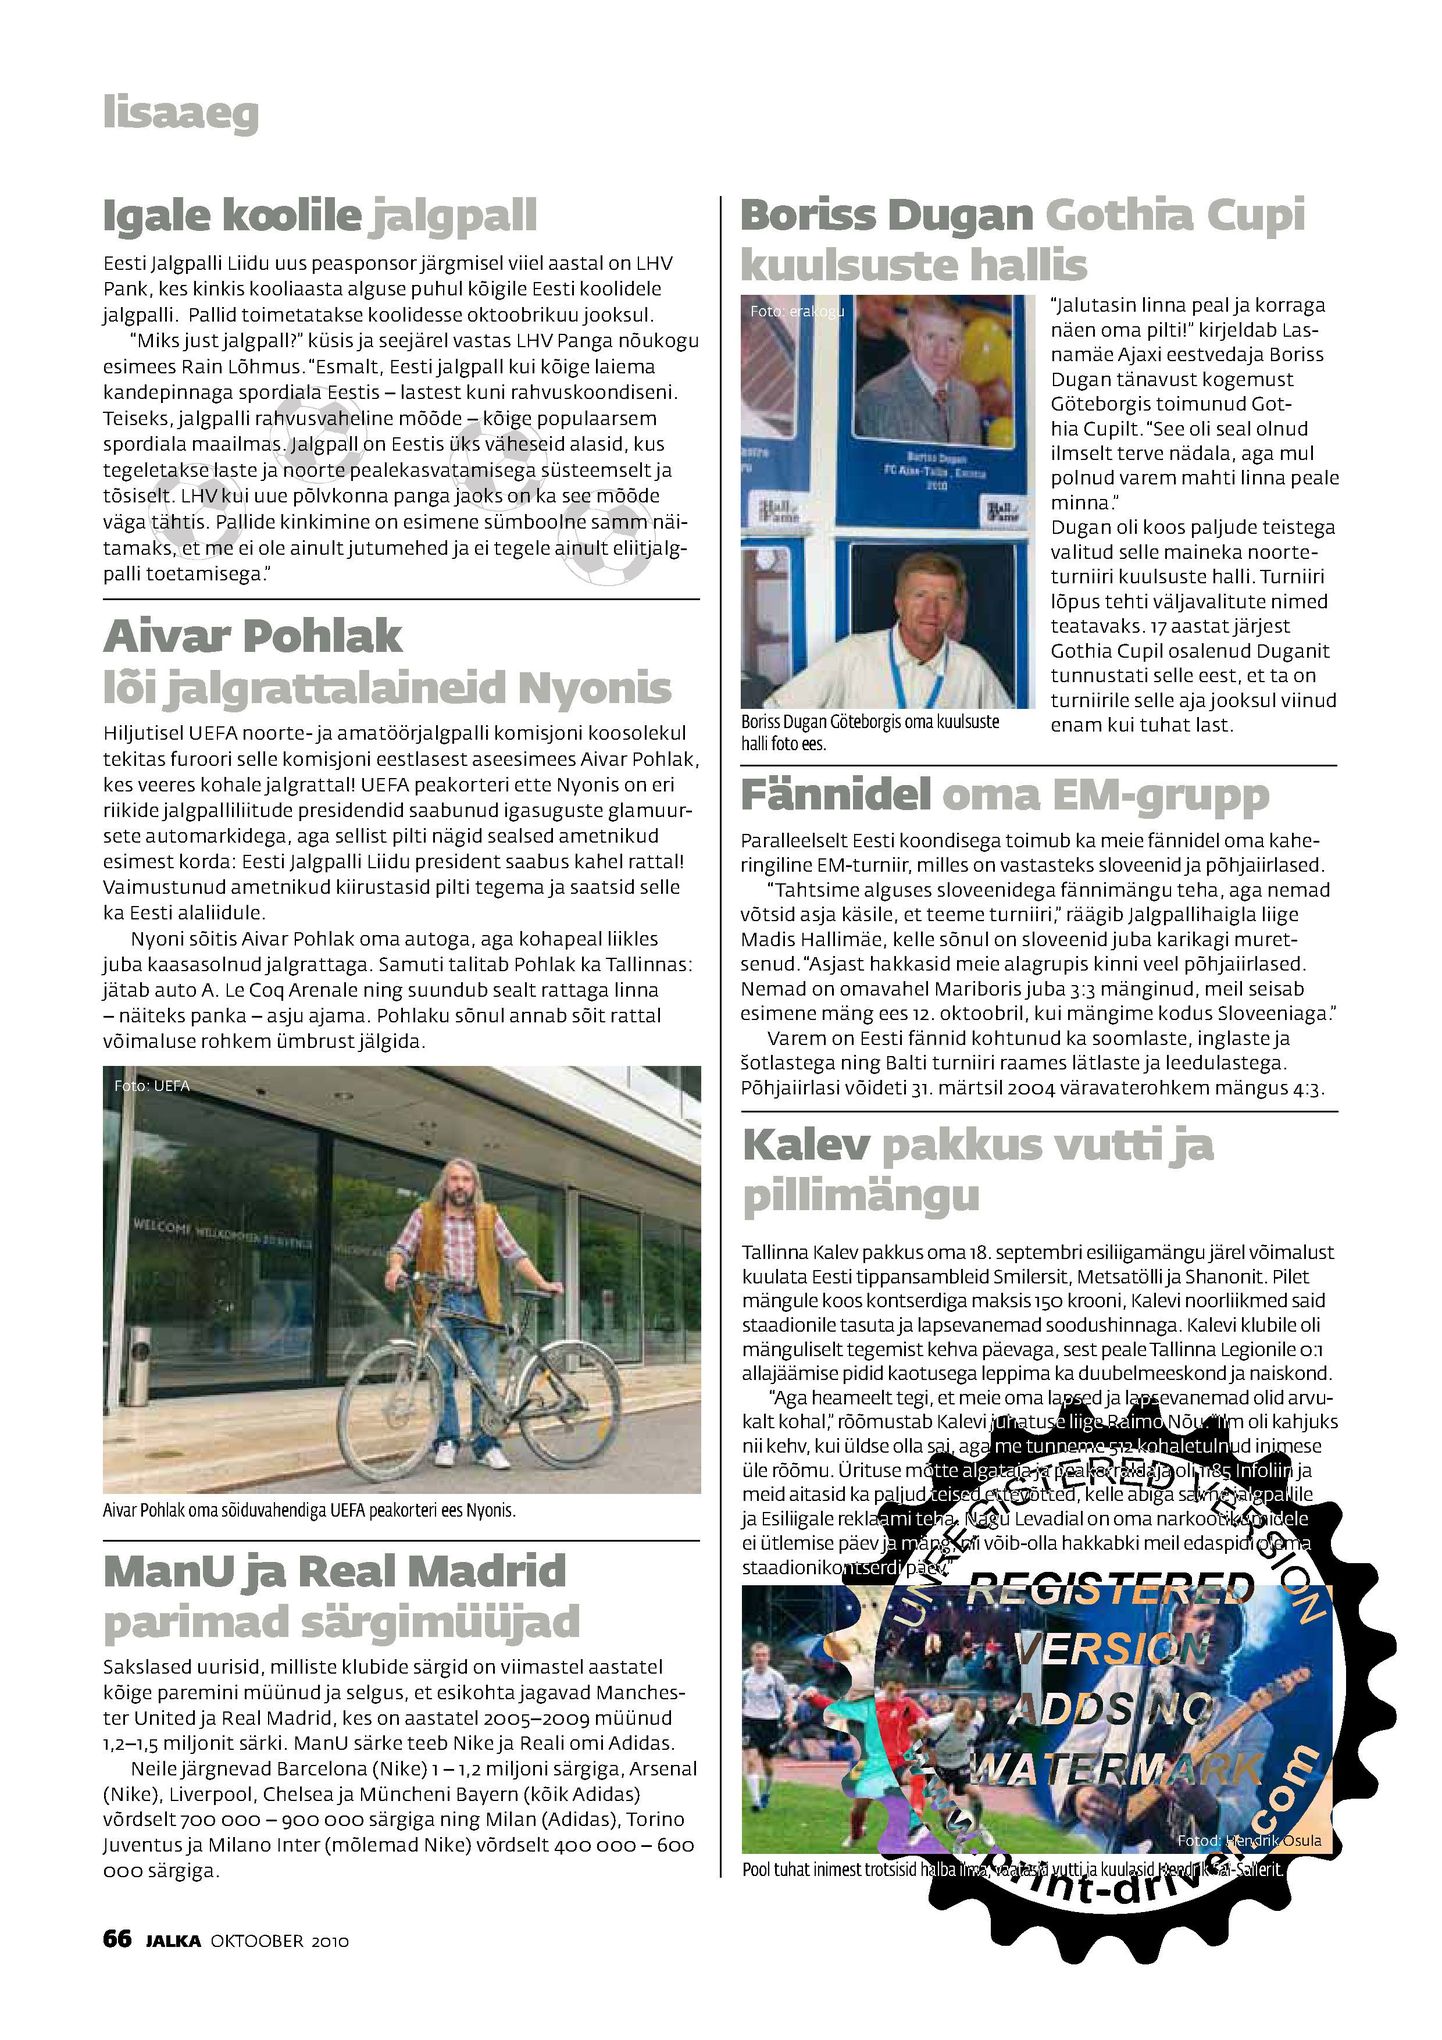 Ajakirja jalka oktoobri numbri lehekülg 66, kus on näha Aivar Pohlakut jalgrattaga UEFA peakorteri ees Nyonis.